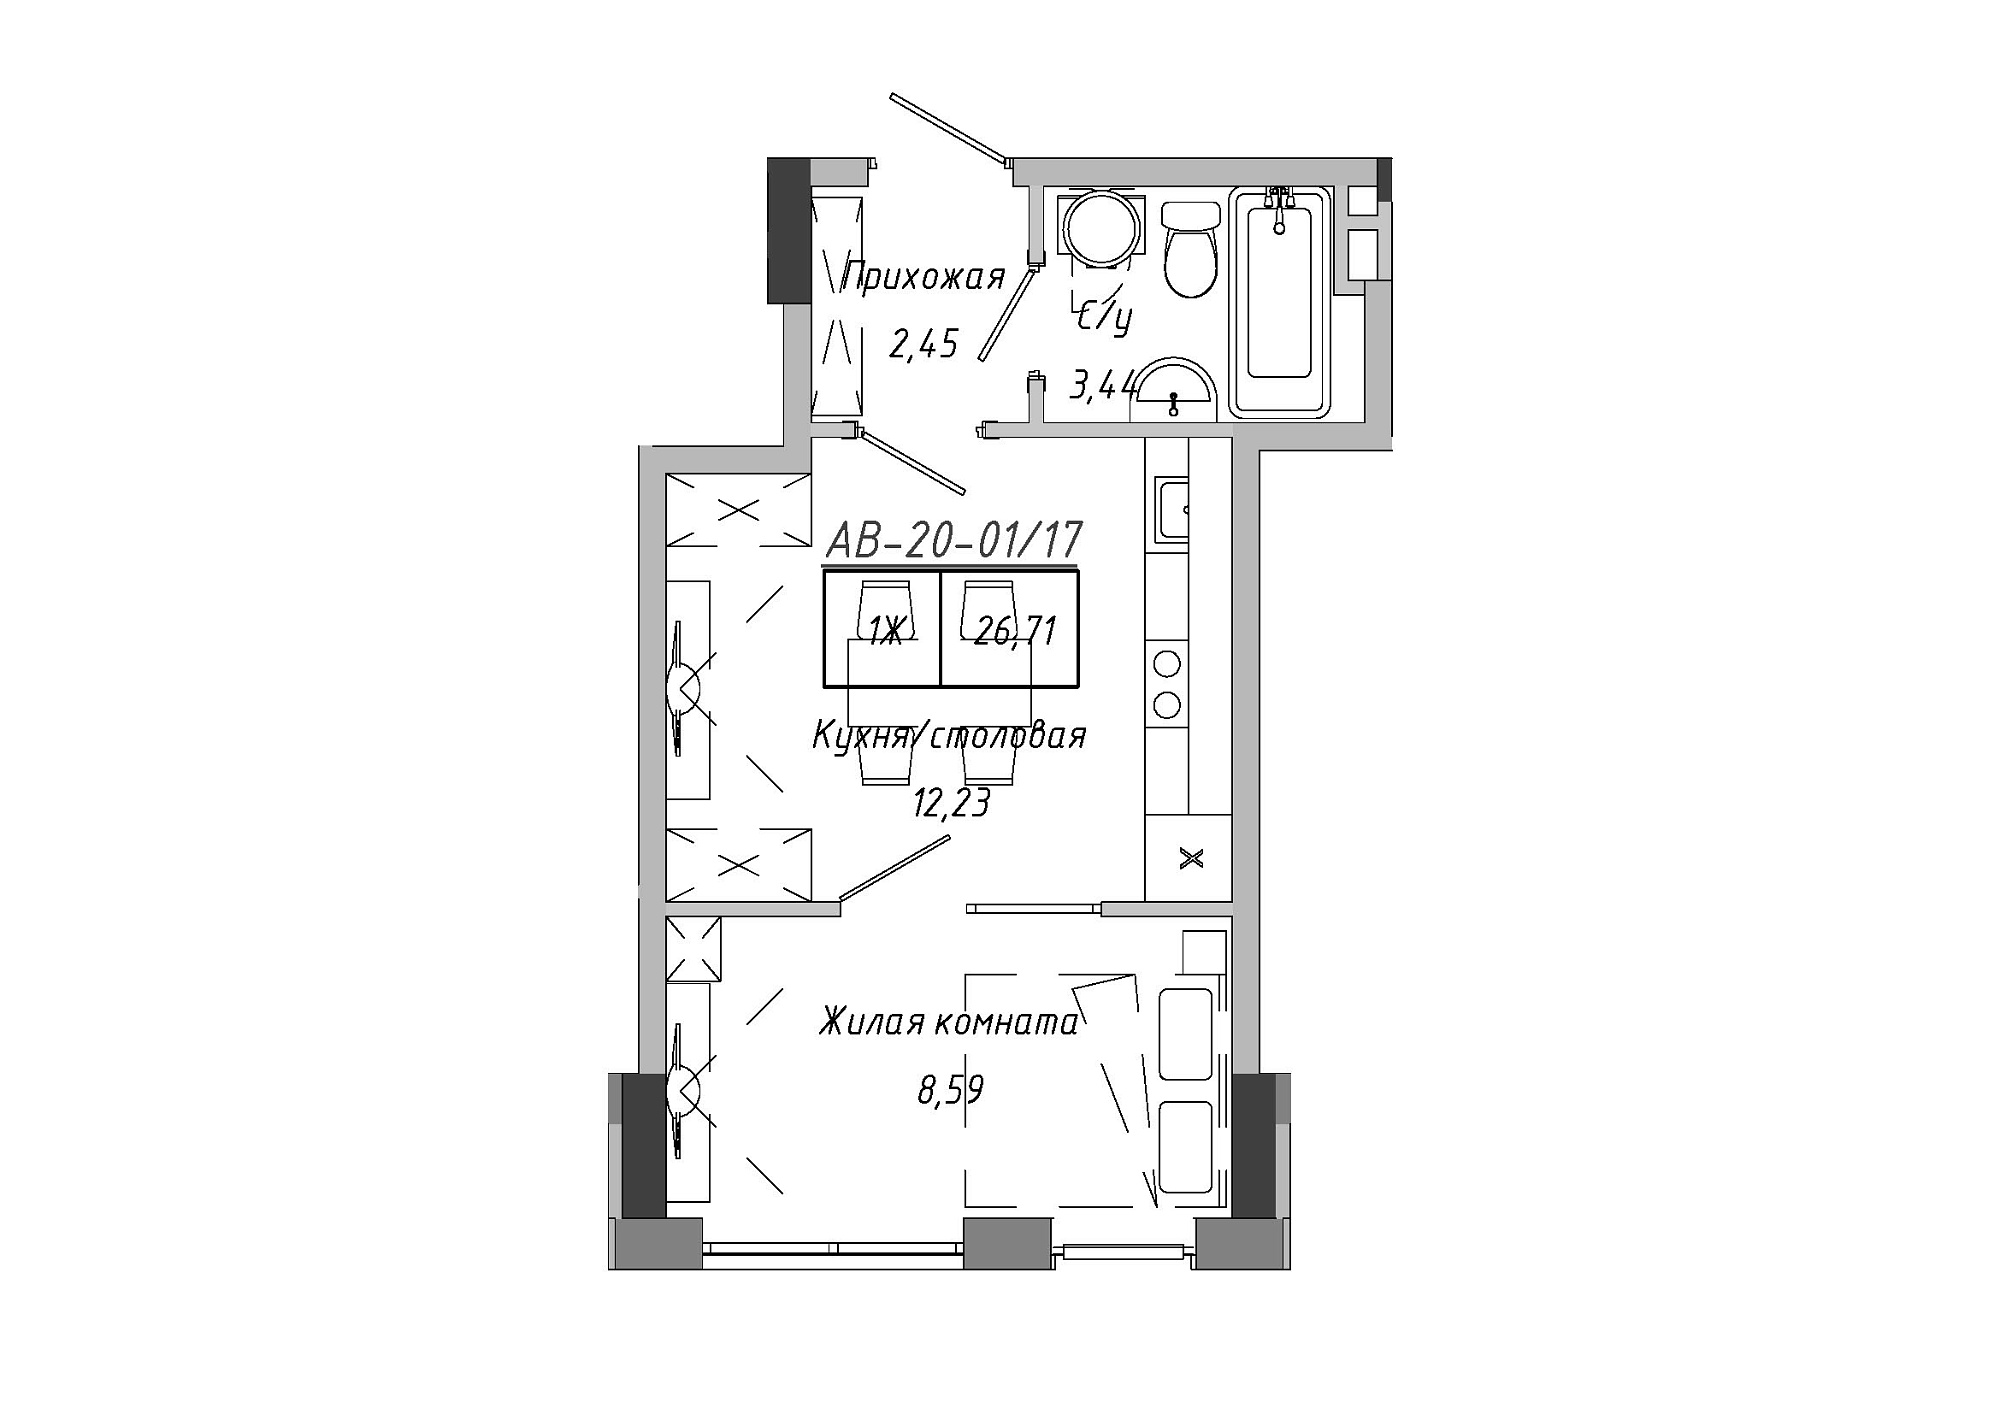 Планировка 1-к квартира площей 26.71м2, AB-20-01/00017.